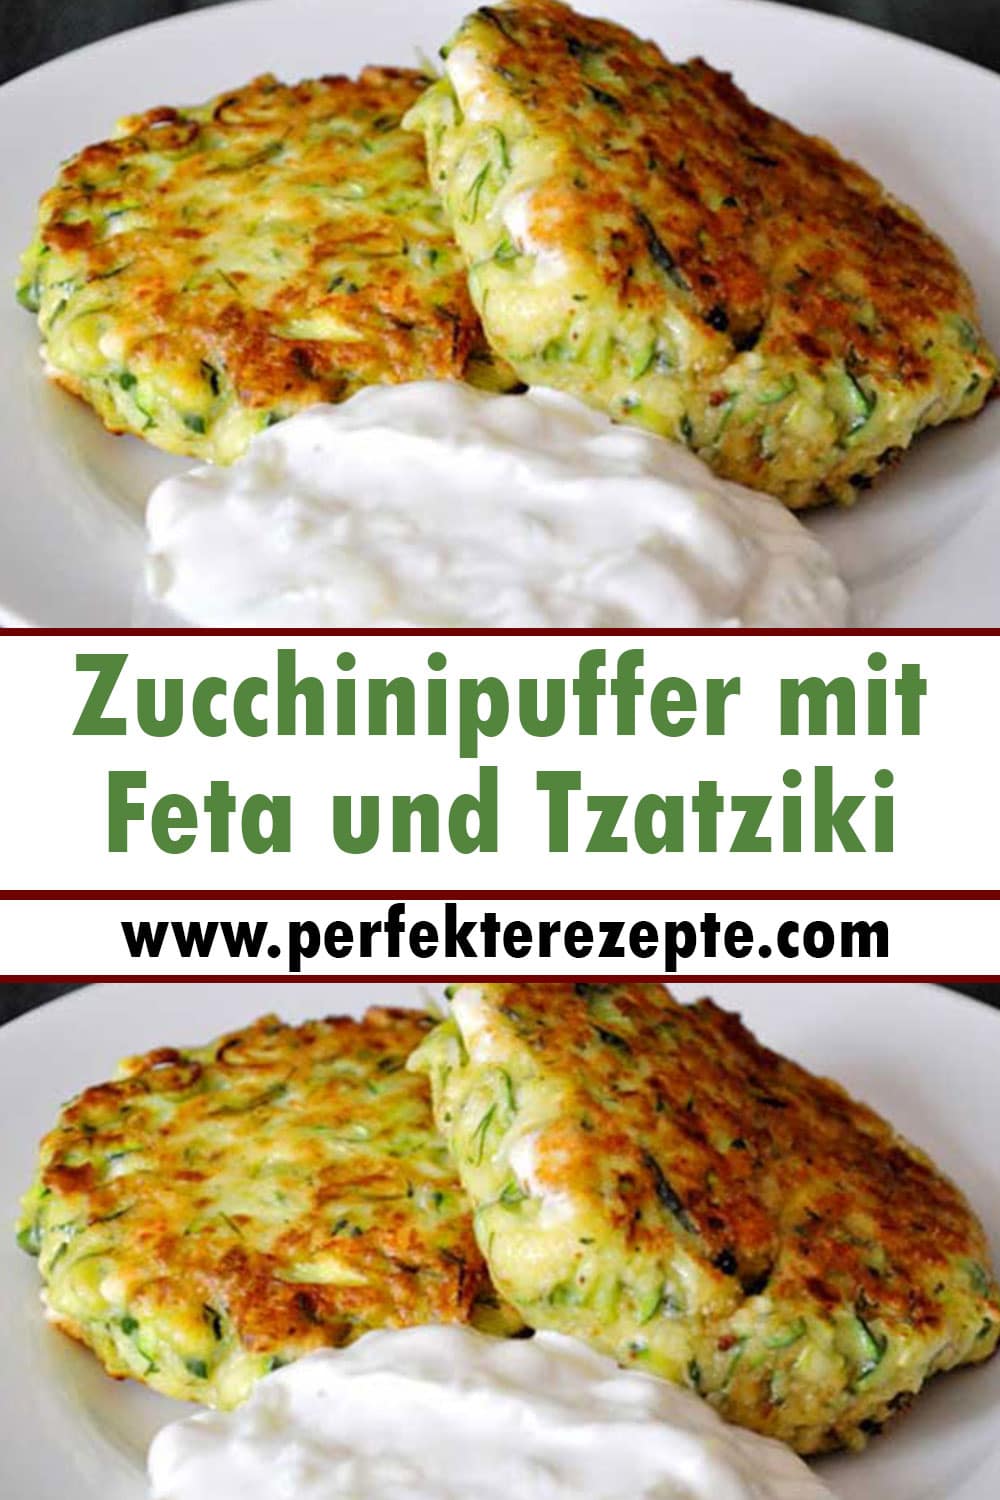 Zucchinipuffer mit Feta und Tzatziki Rezept